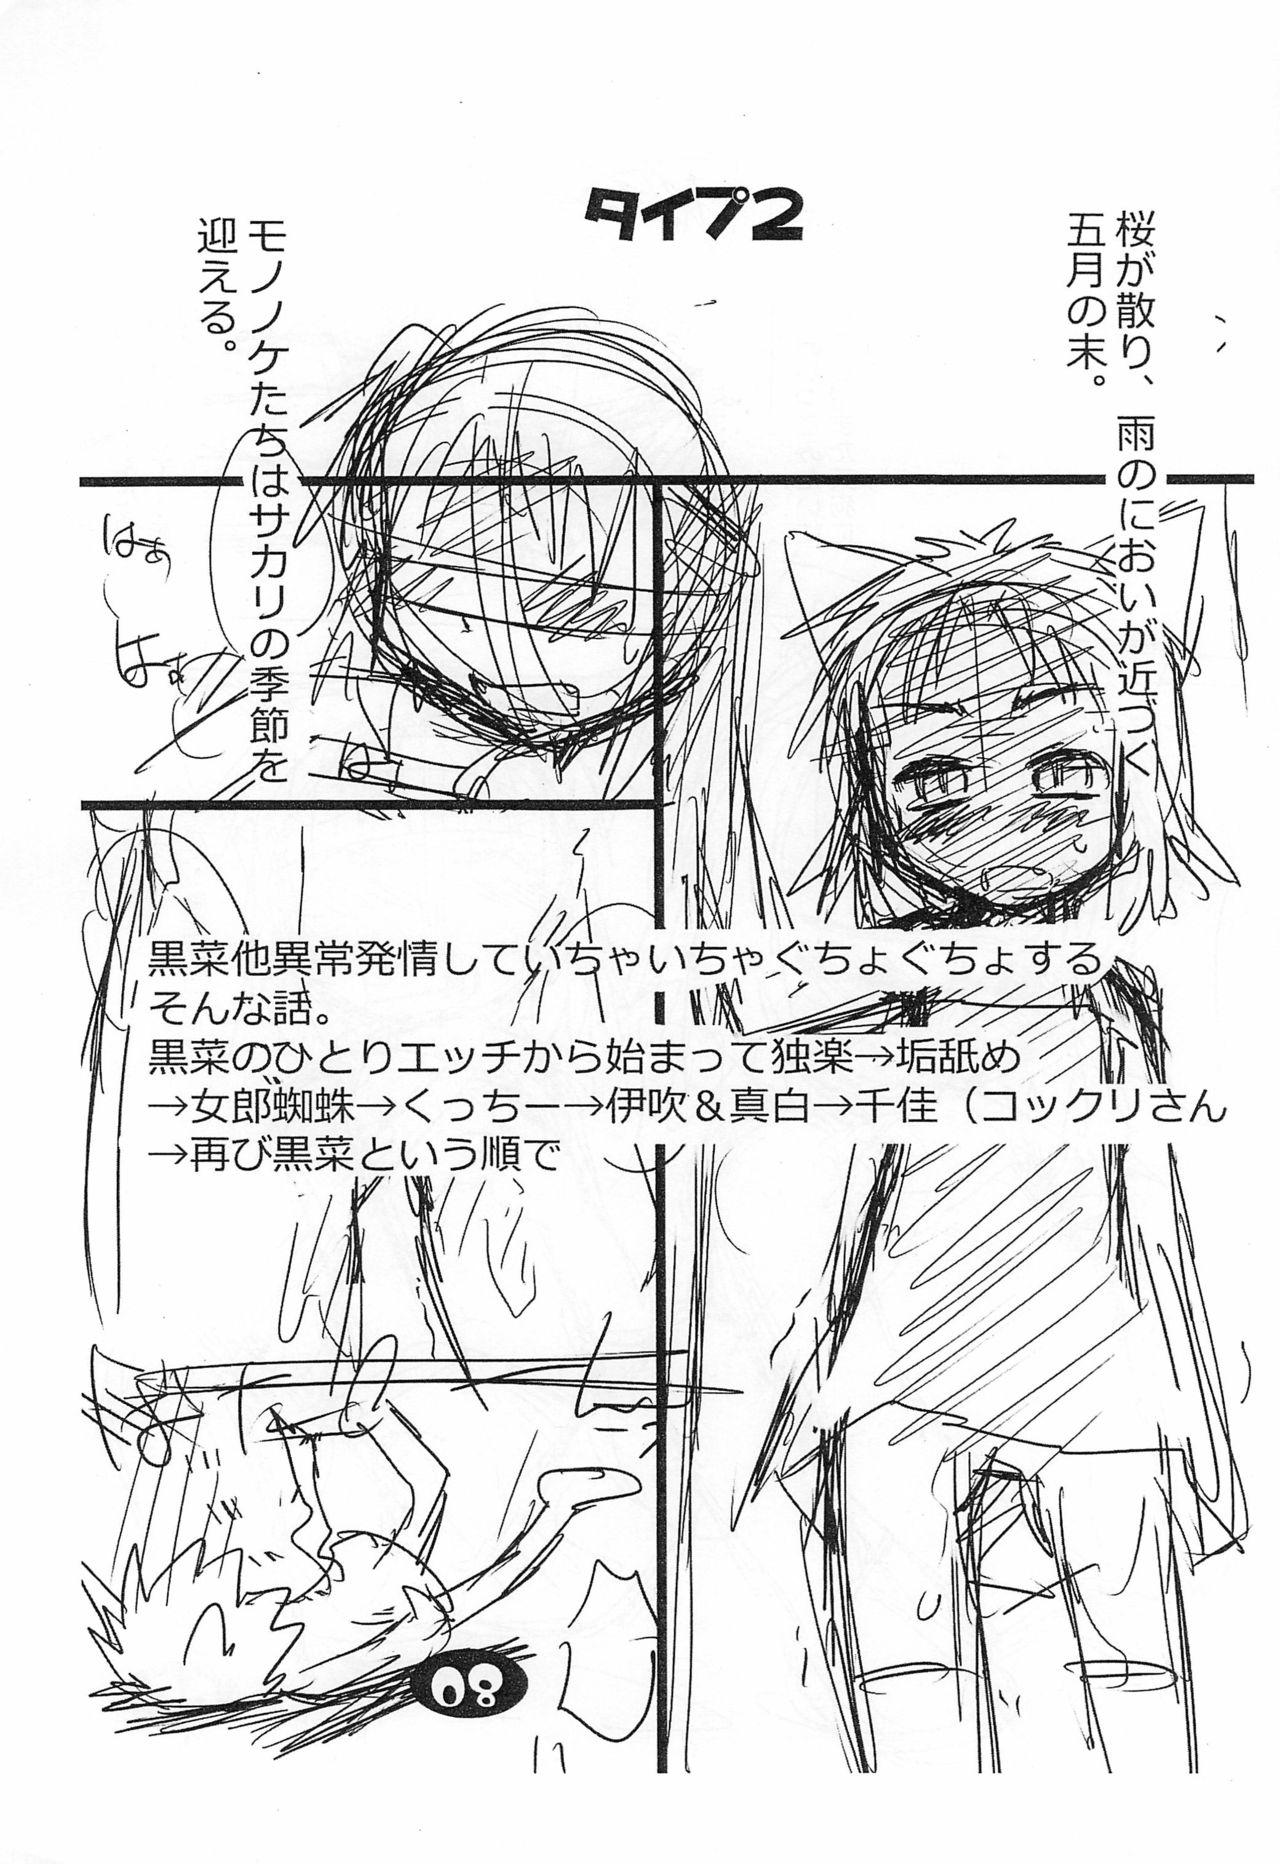 Trimmed (Puniket 30) [Ware PON! (KONKON)] Nuko Musume-ppoi Offset Junbi-gou (Neko Musume Michikusa Nikki) - Neko musume michikusa nikki Whores - Page 9